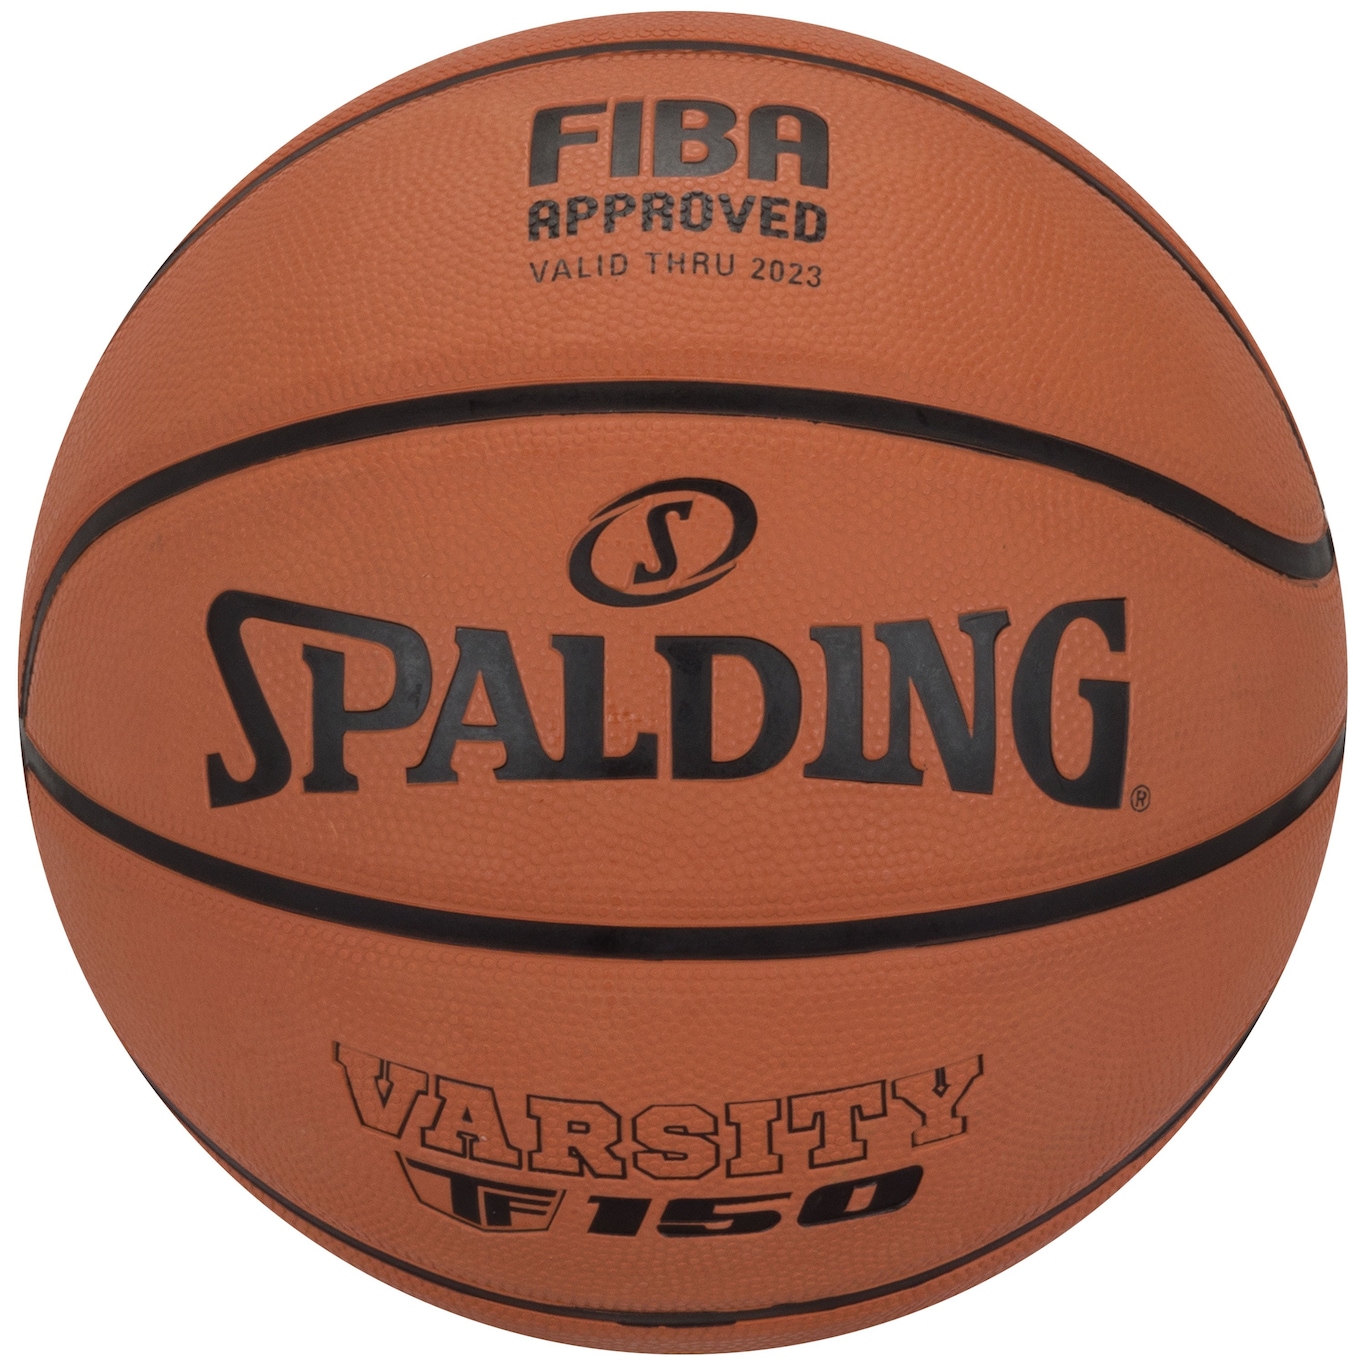 Bola de Basquete Spalding Varsity Tf-150 - Foto 1